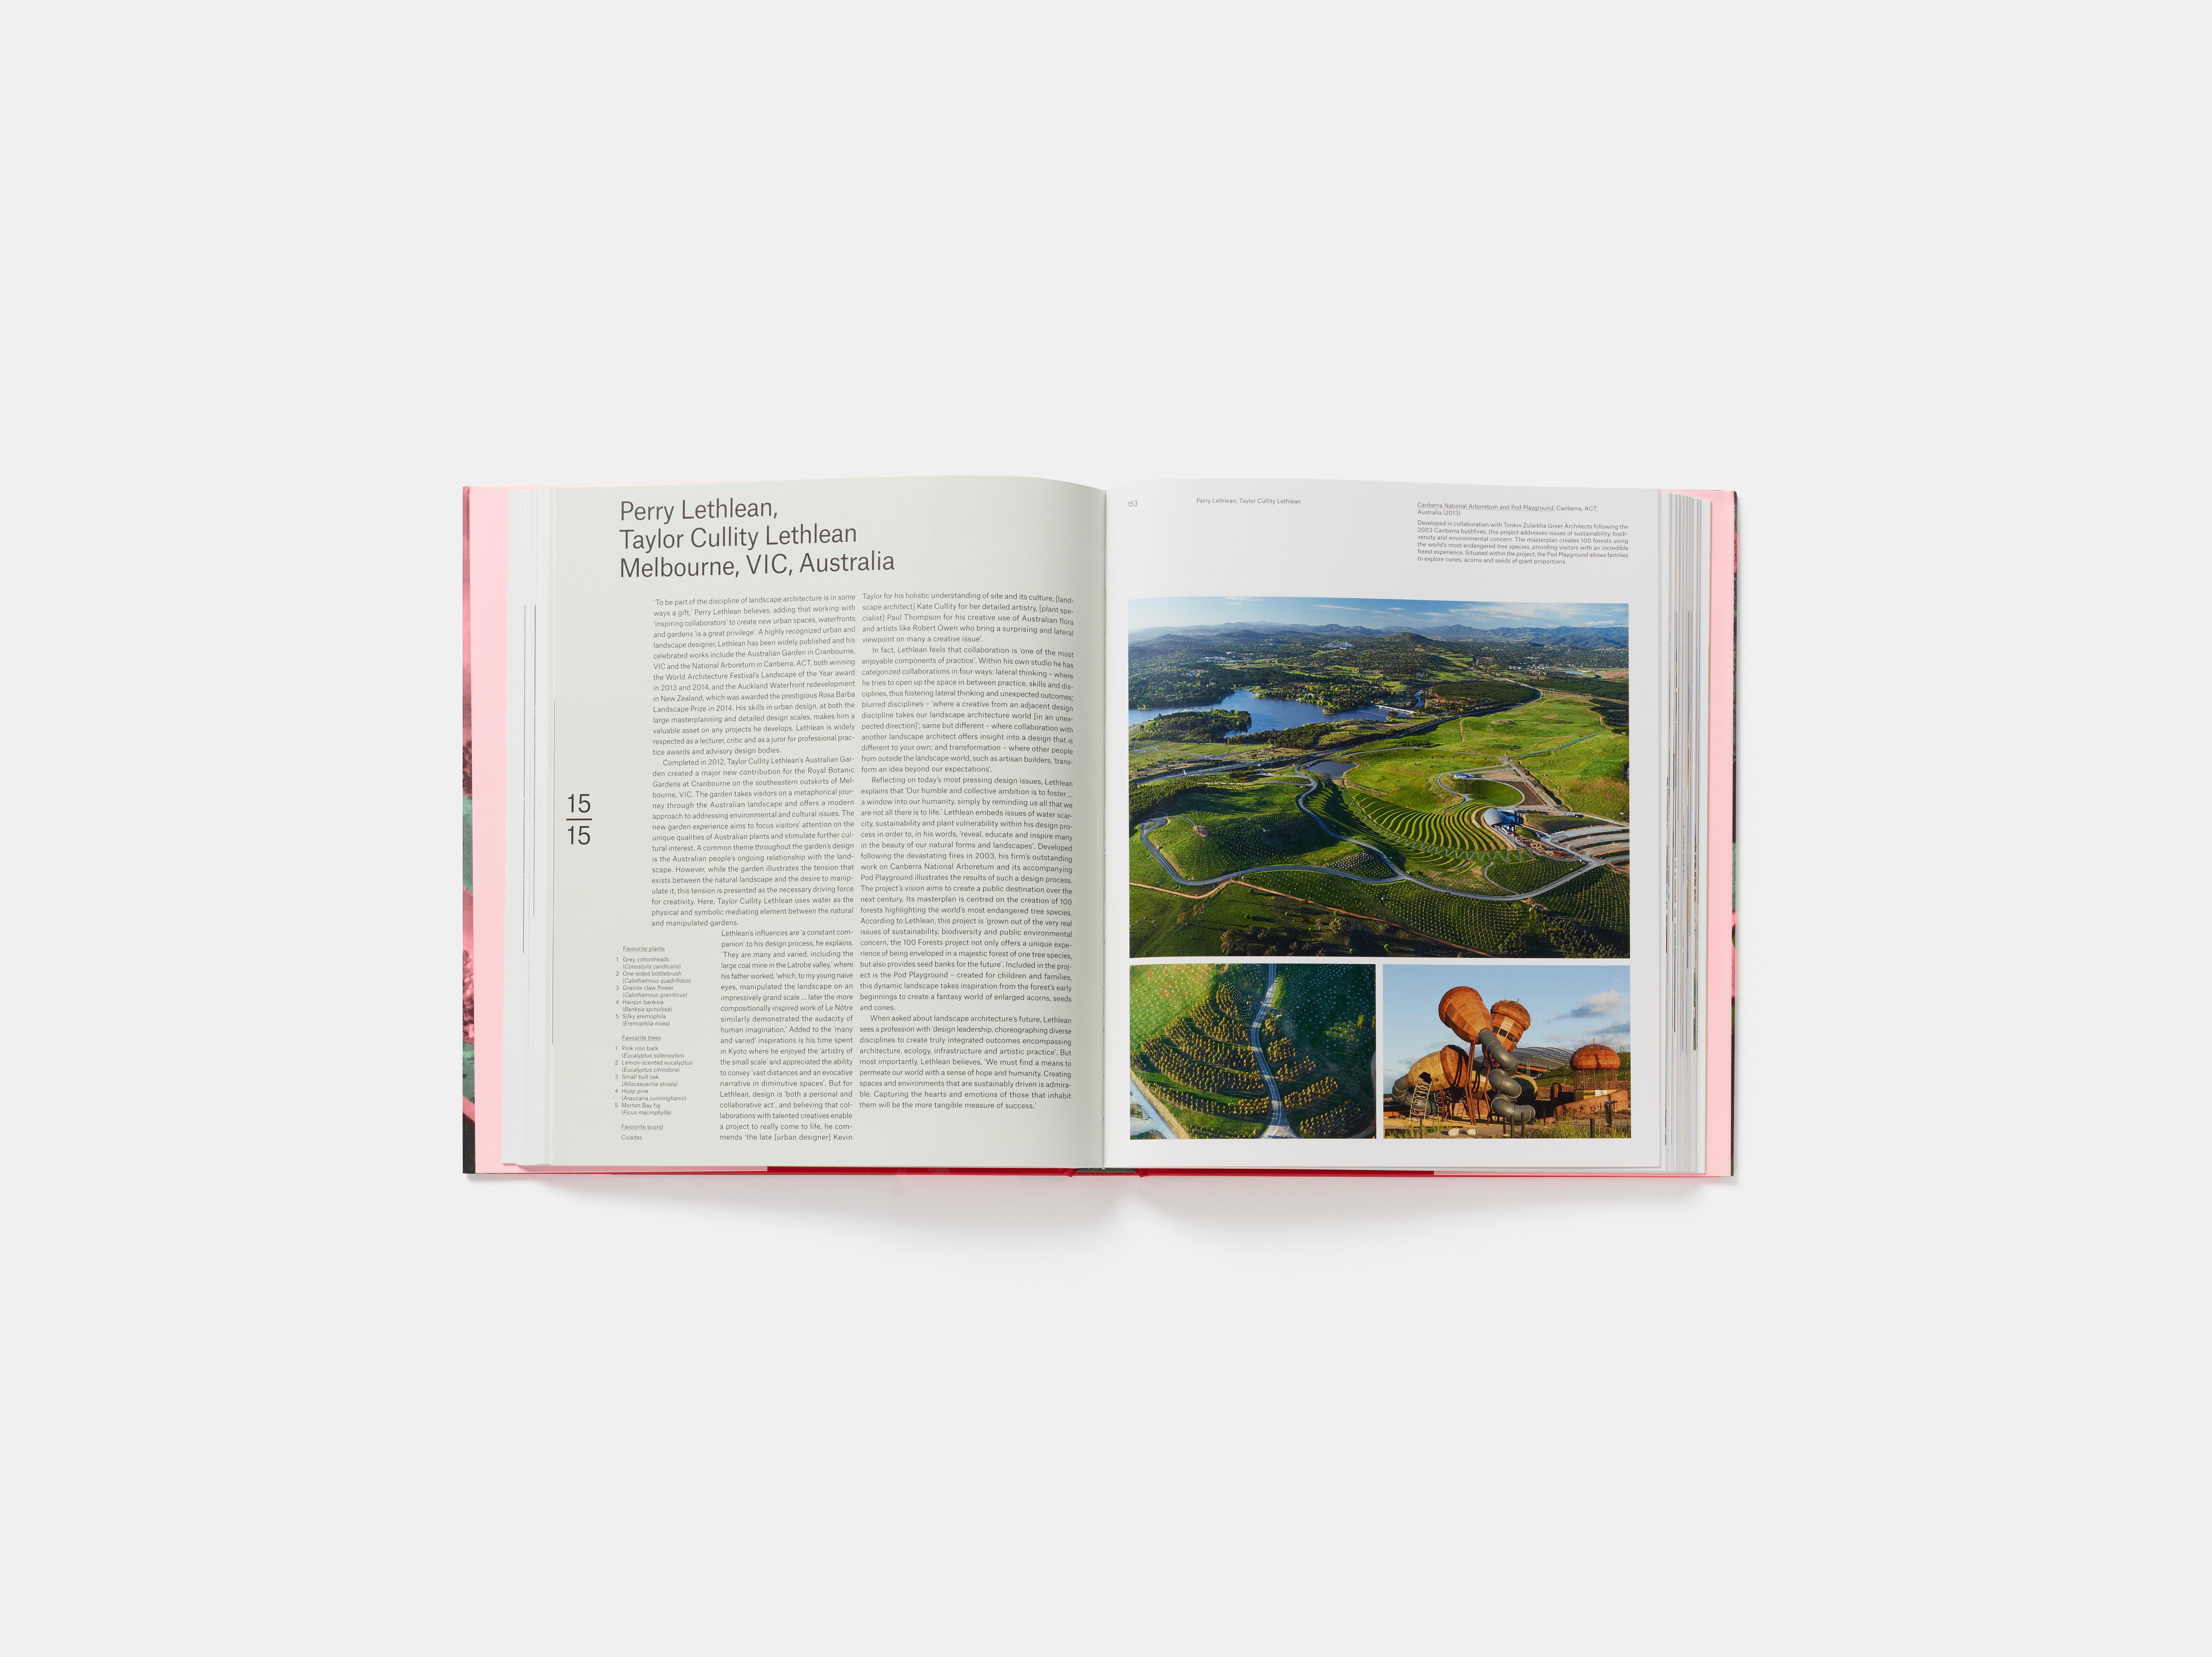 books on landscape architecture